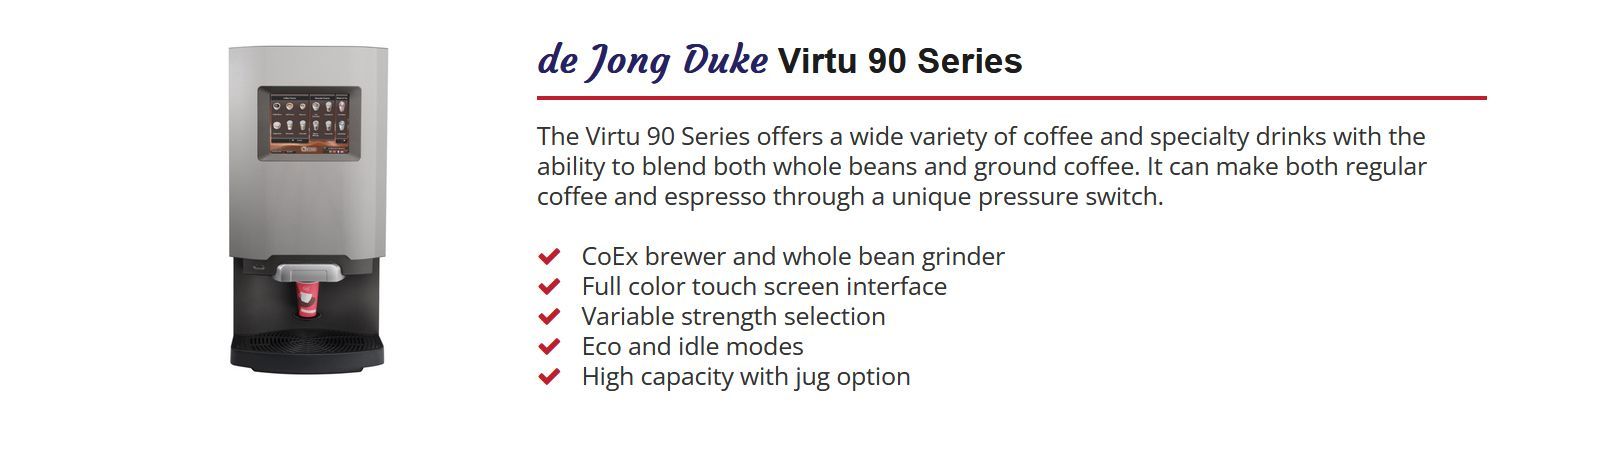 de Jong Duke Virtu 90 Series Coffee Machine